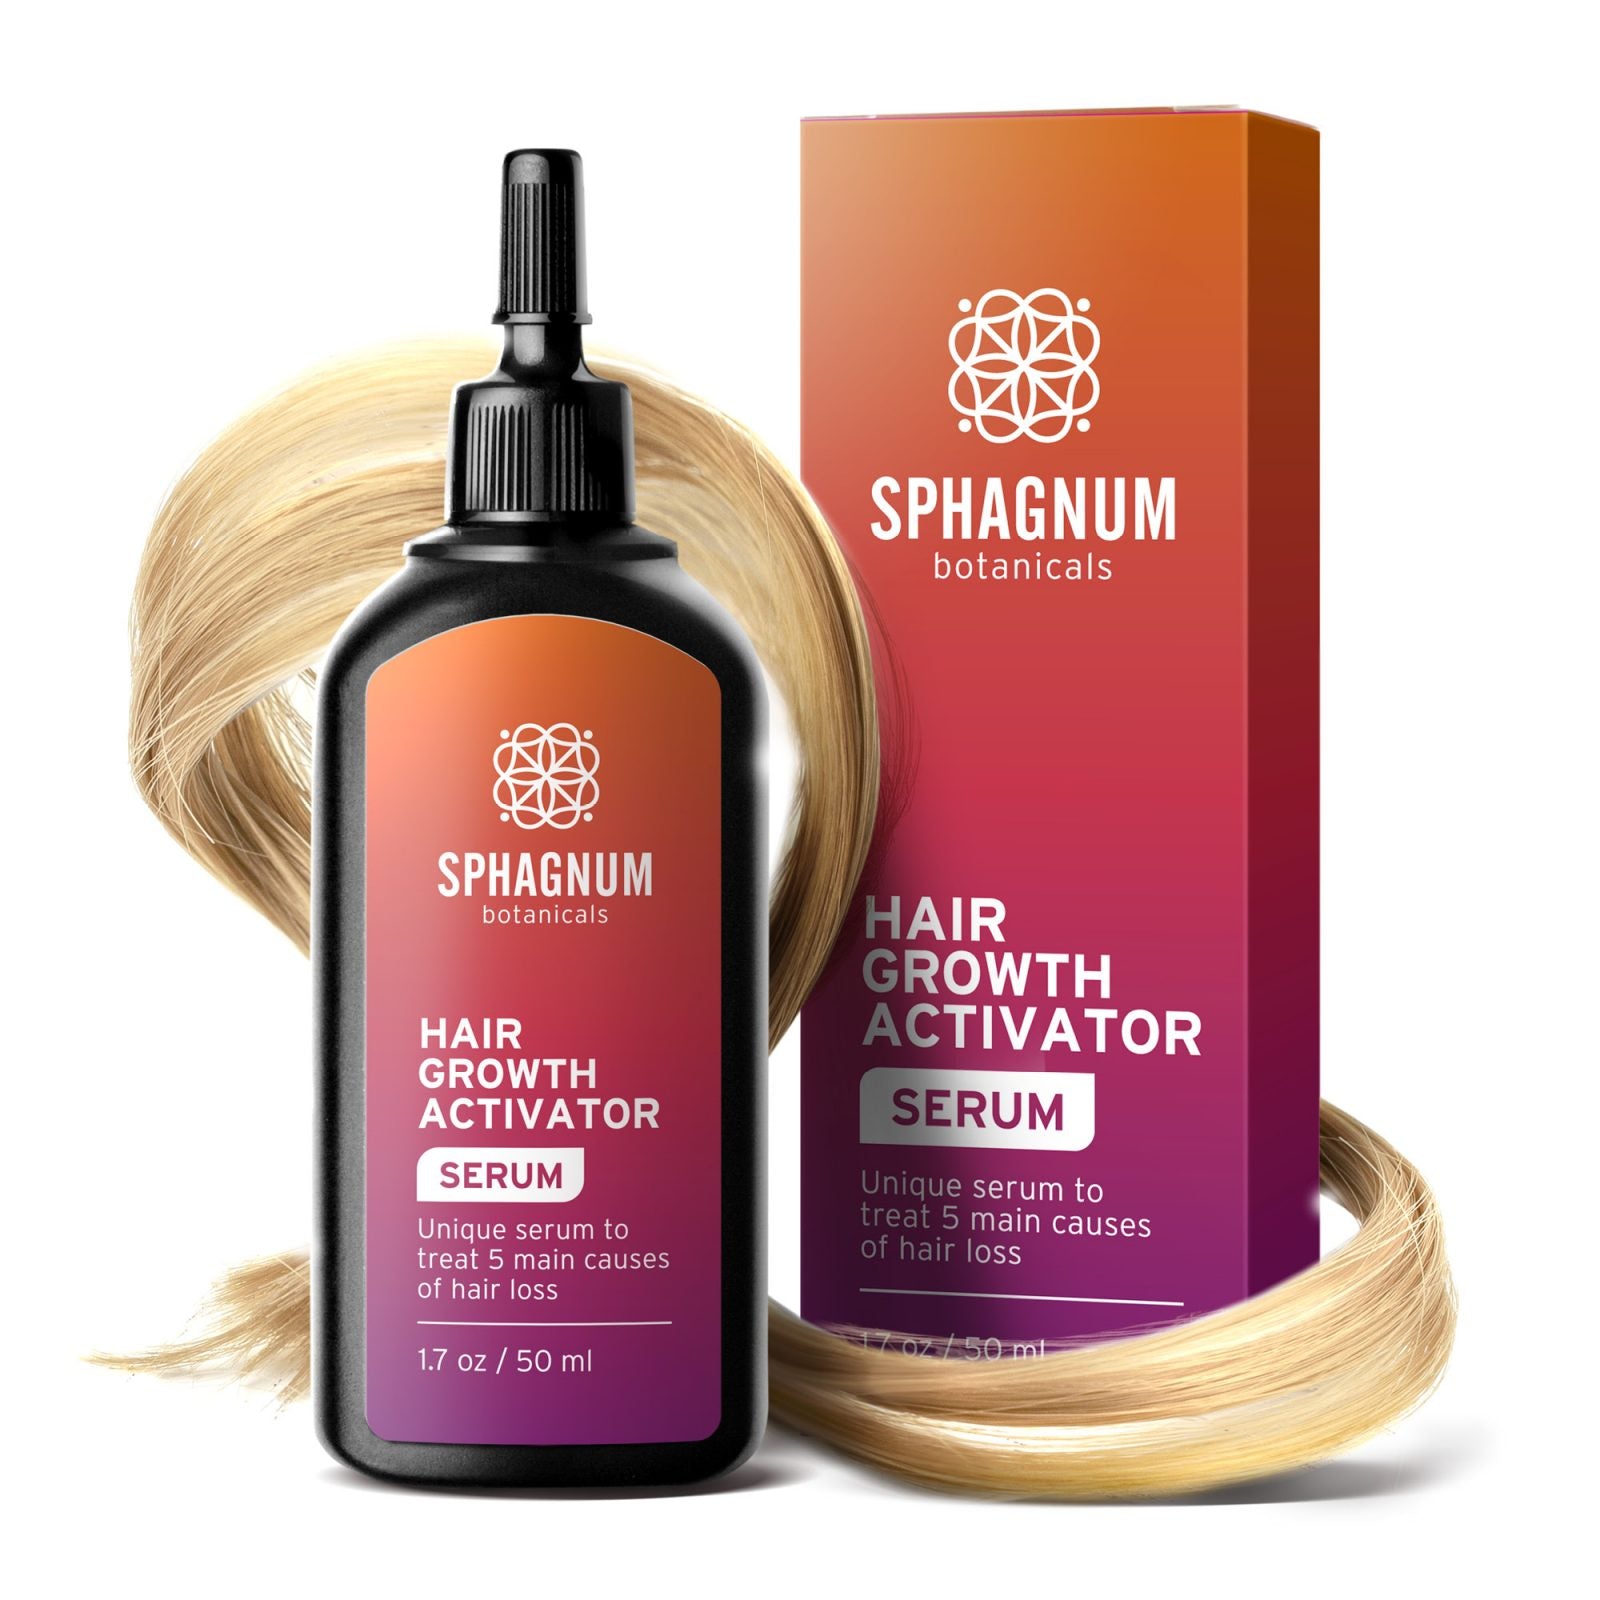 Hair Growth Activator Serum - 1.7oz